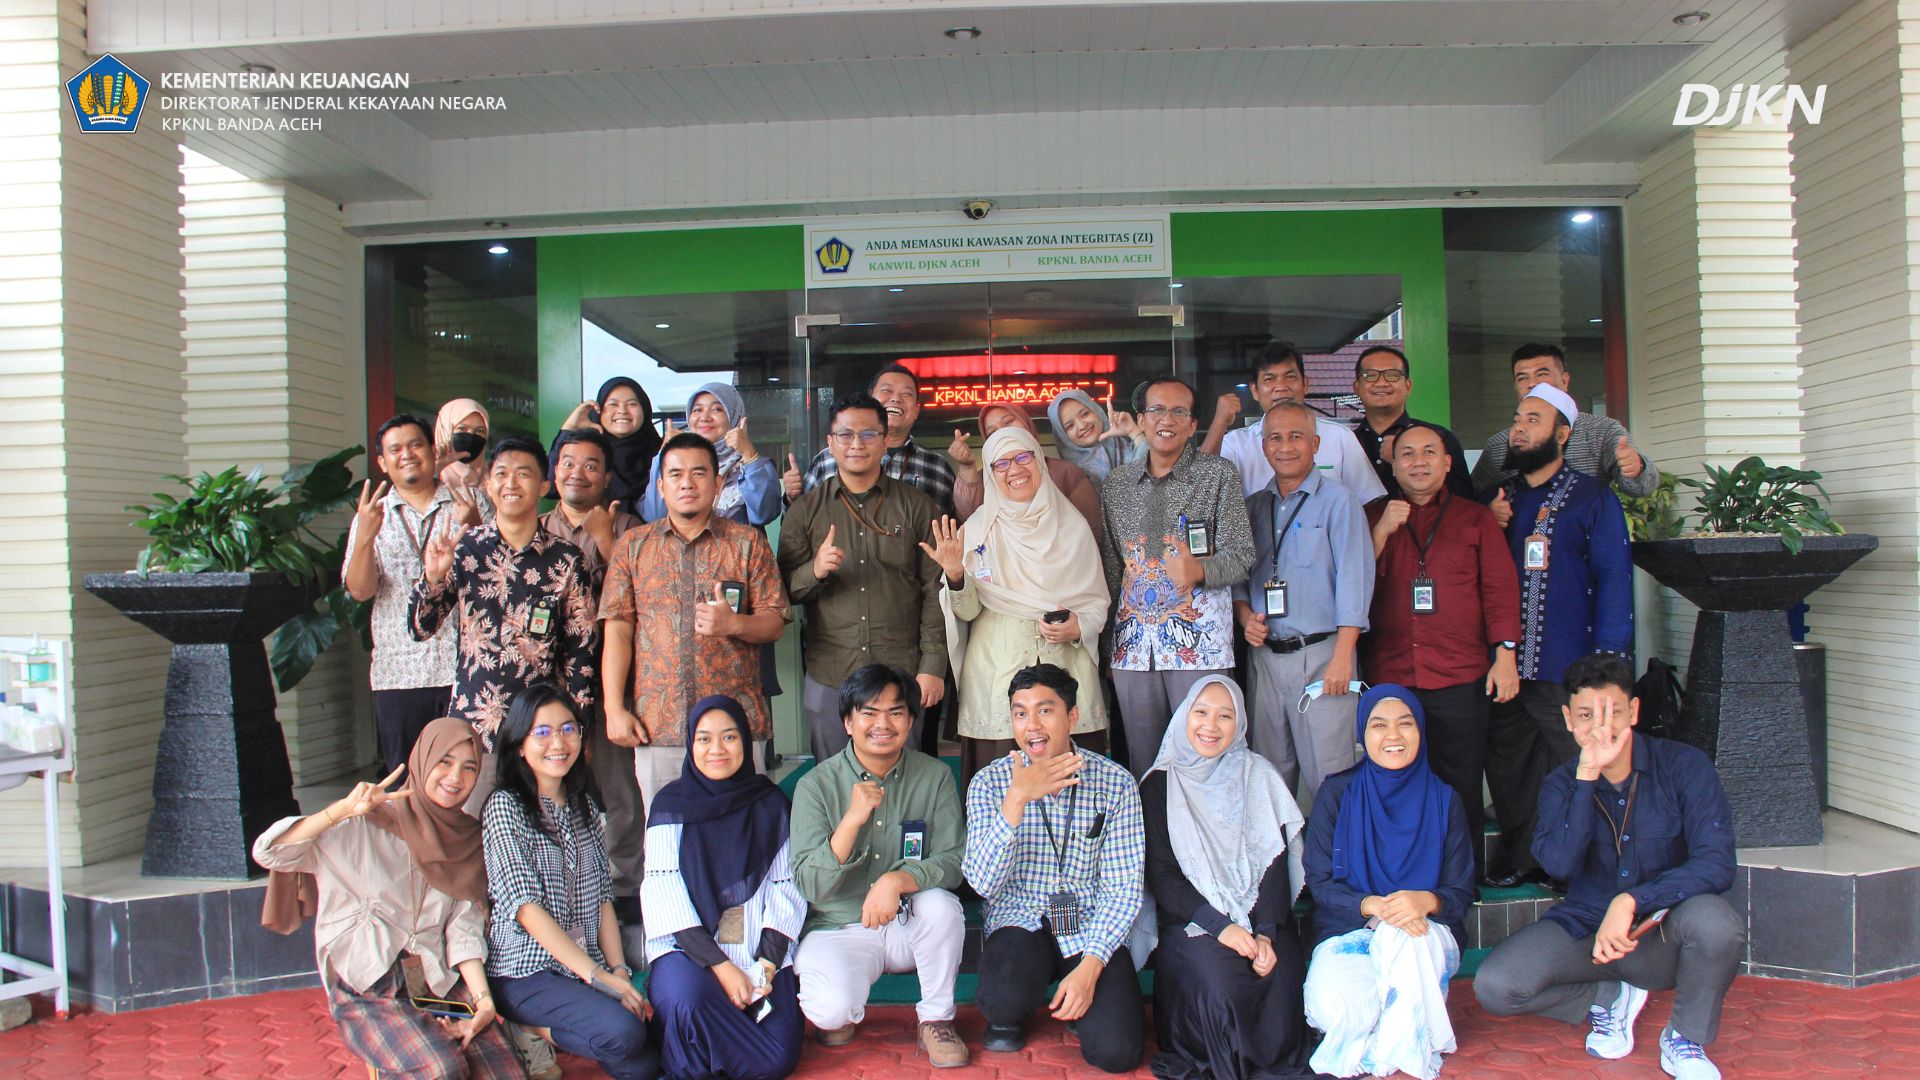 KPKNL Banda Aceh Optimis Pertahankan Predikat ZI/WBBM